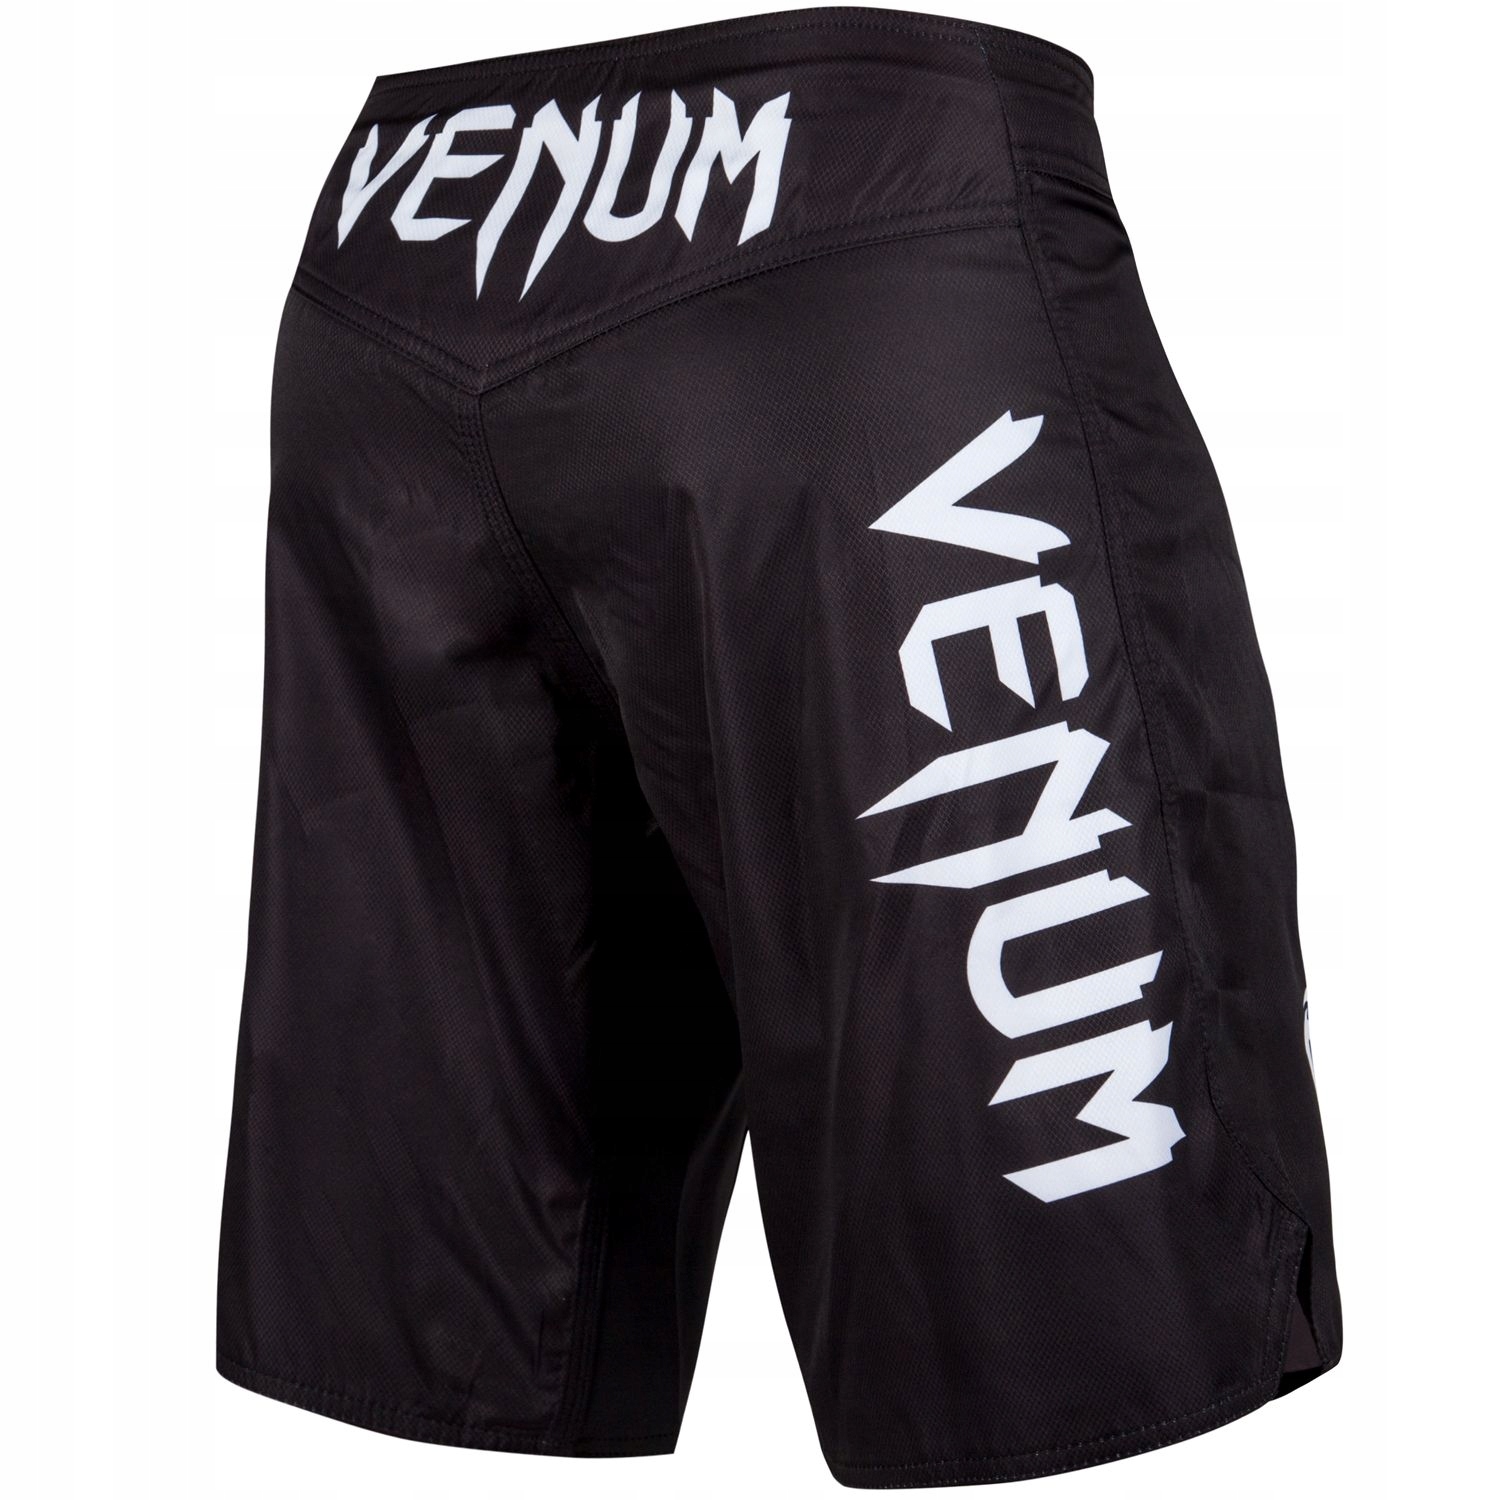 Venum Venum Light 3.0 fightshorts BLACK/WHITE 2